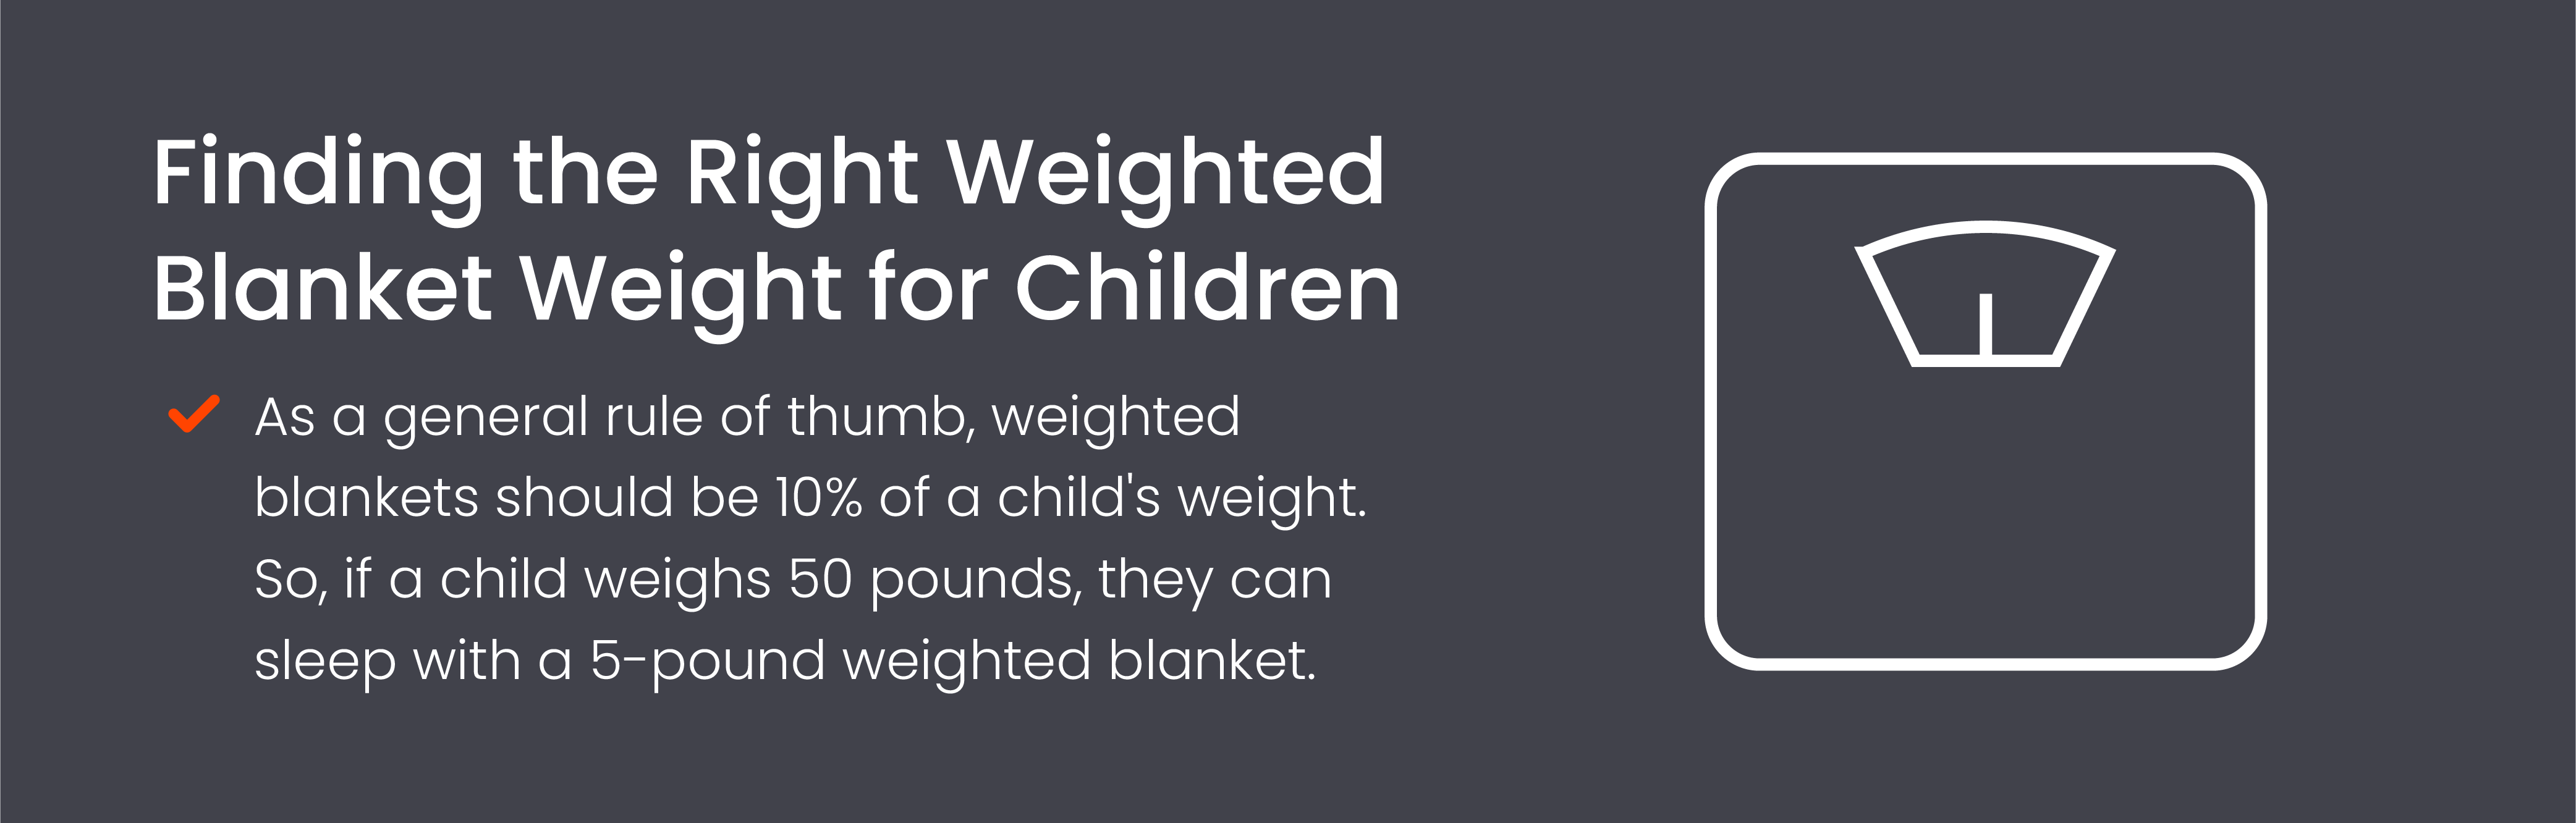 Blanket Weight for Children